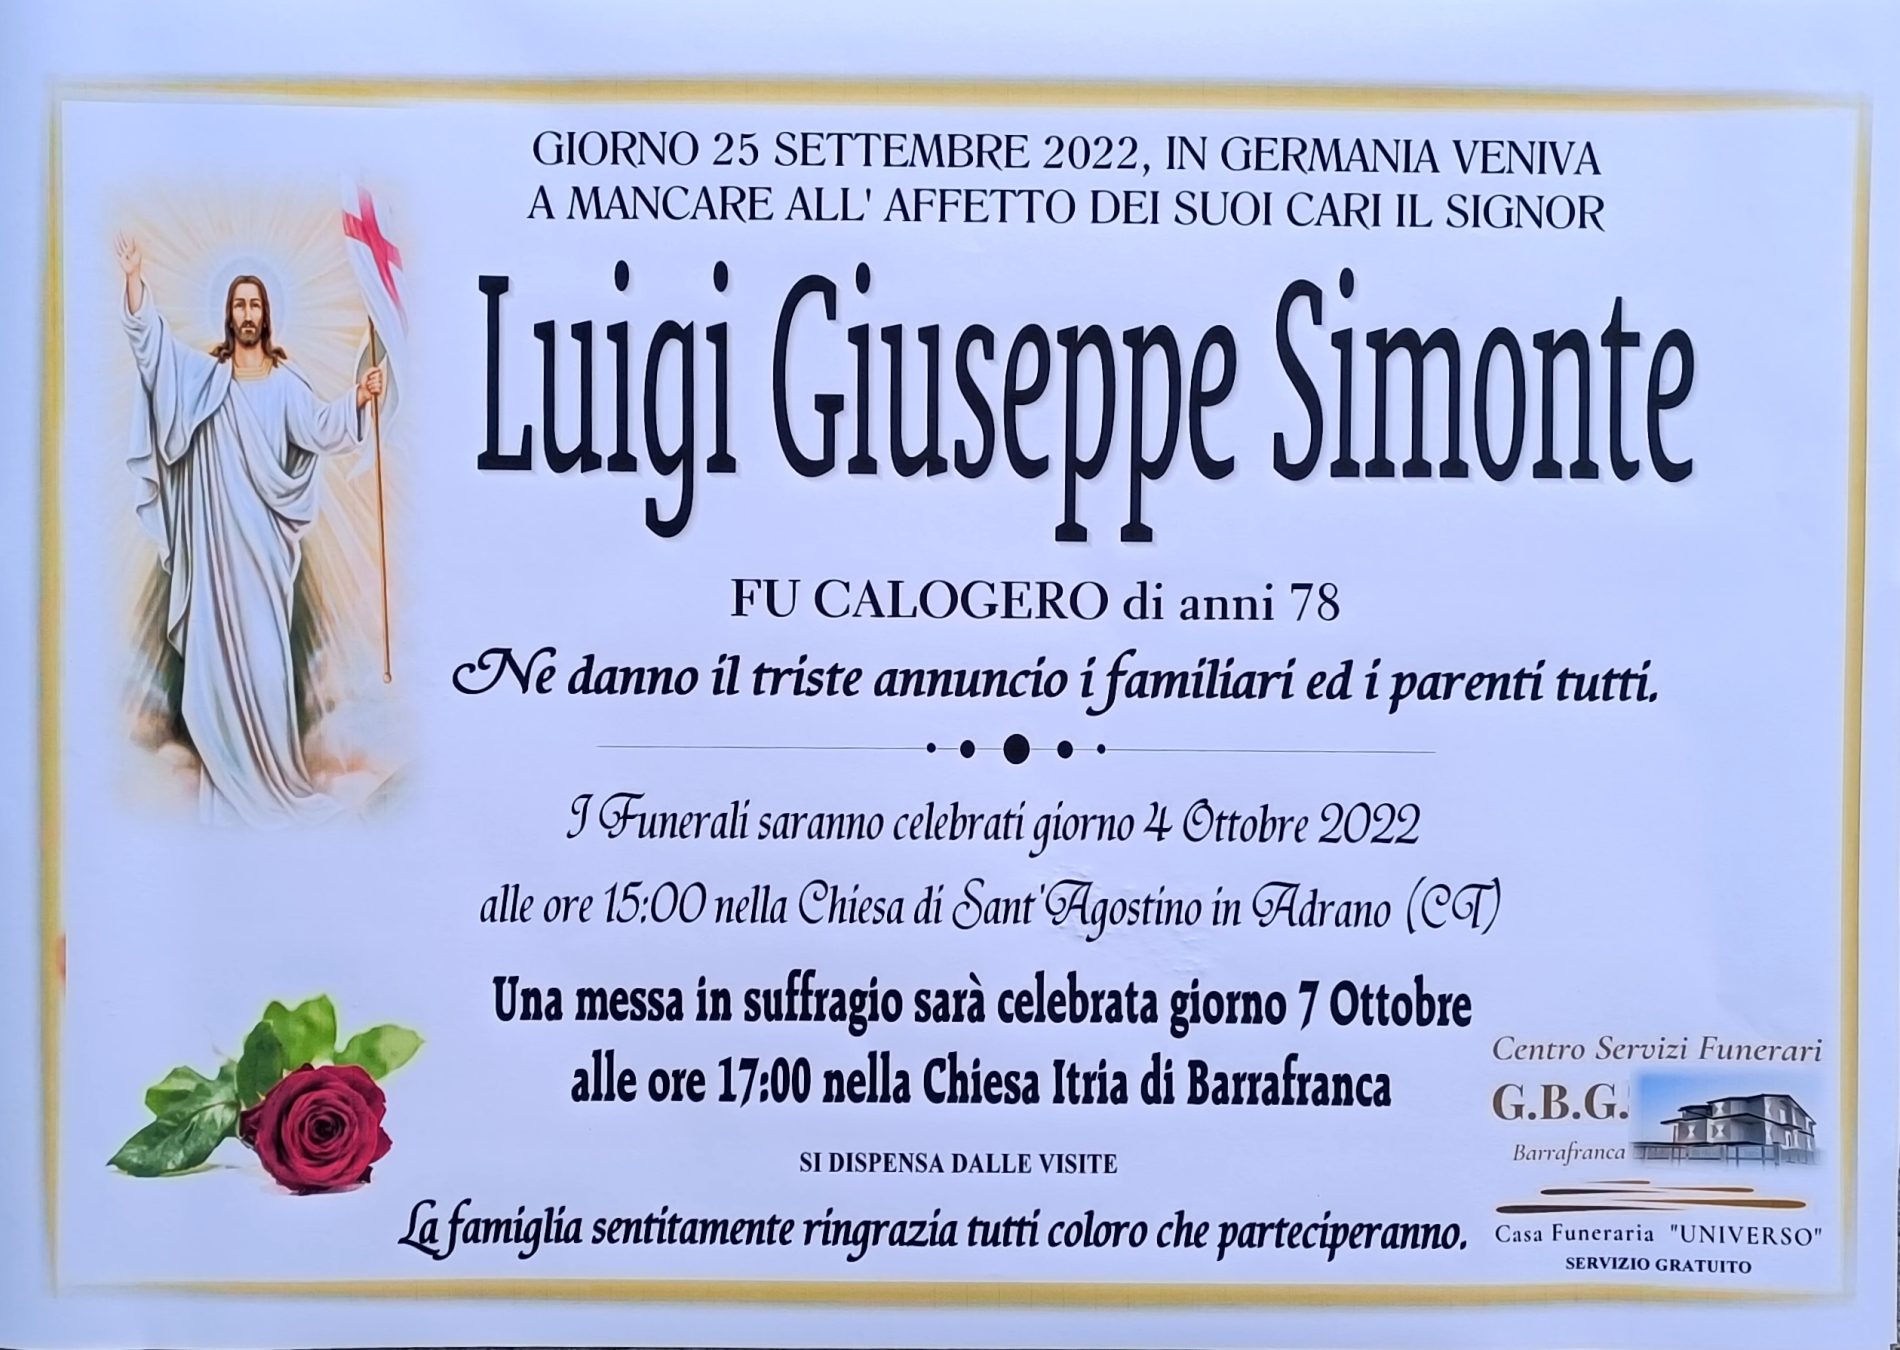 Annuncio servizi funerari agenzia G.B.G.  sig. Luigi Giuseppe Simonte fu Calogero di anni 78